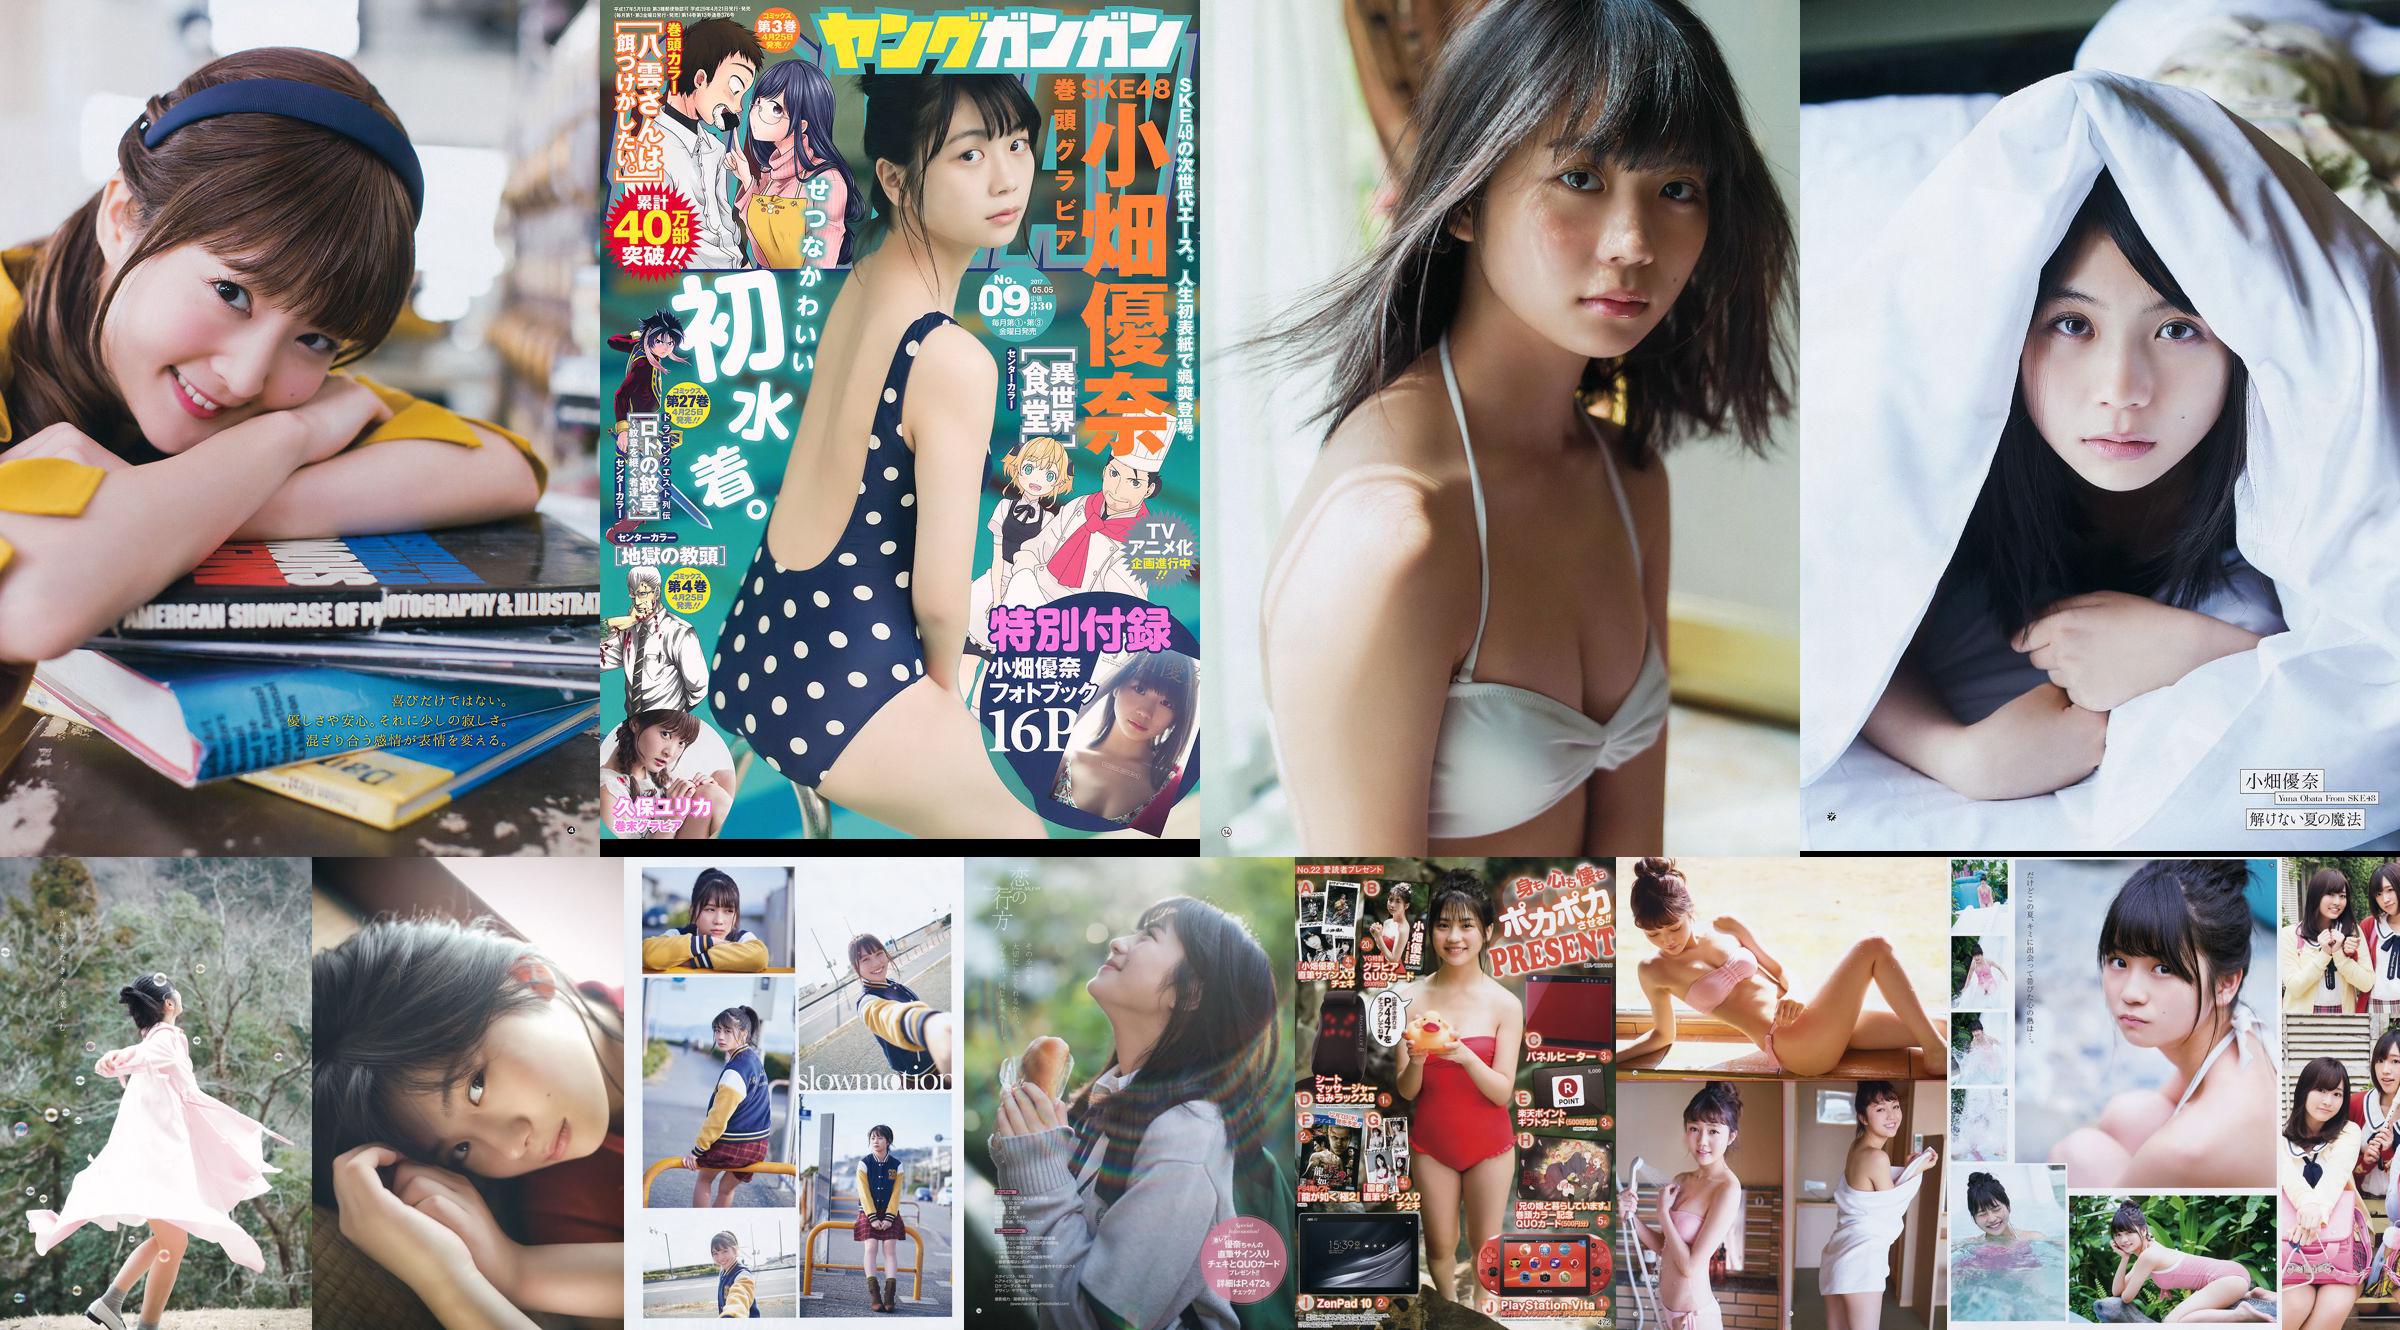 [Young Gangan] Yuna Obata Mina Oba Yume Hayashi 2018 No.12 Photo Magazine No.7a3444 Page 17